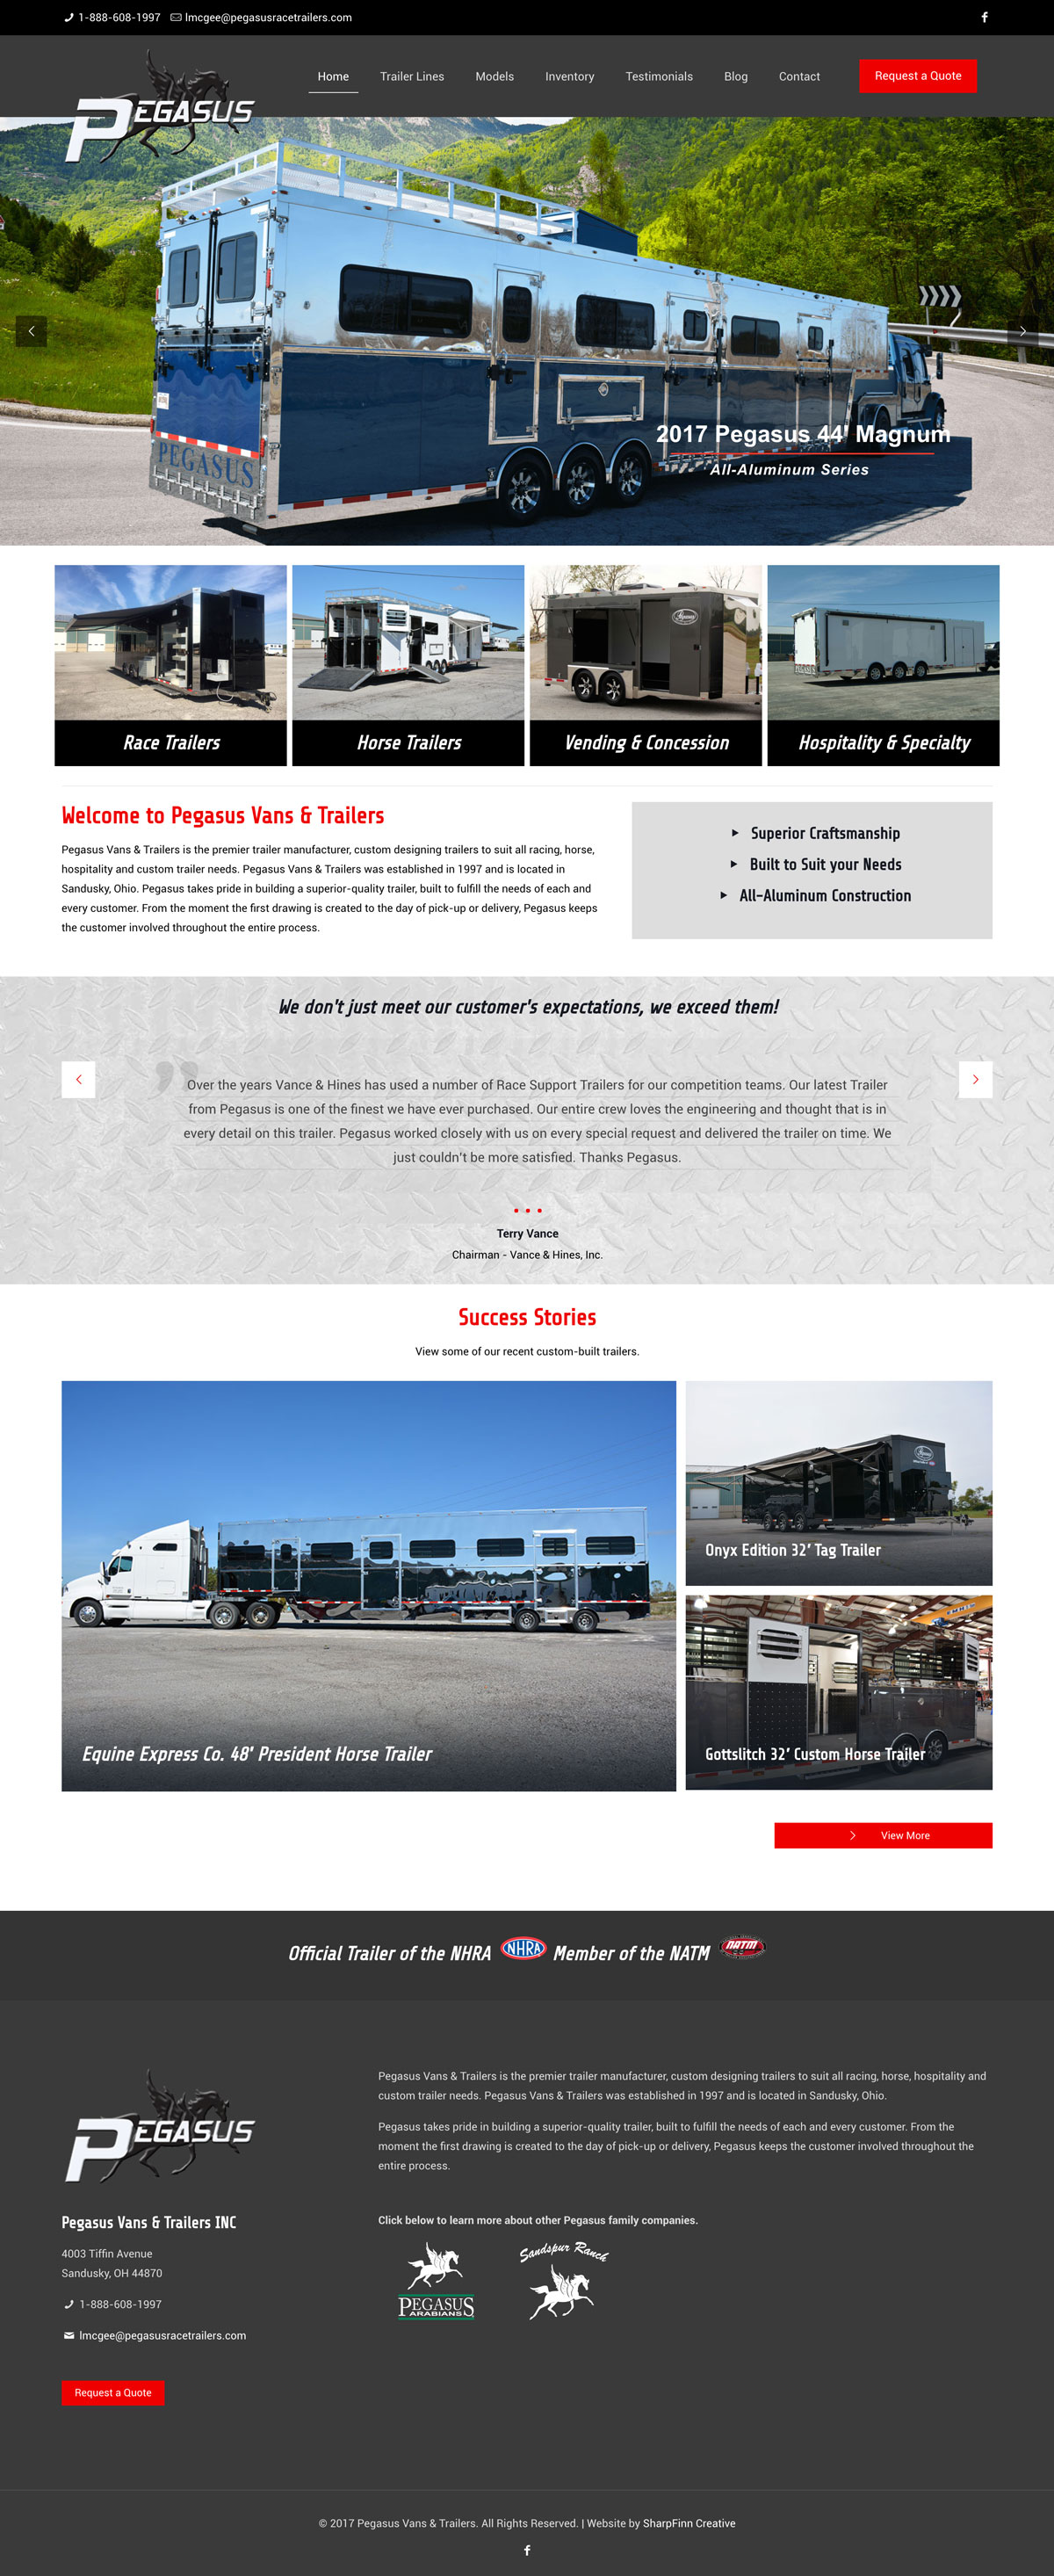 ThorSport Racing | Website Design